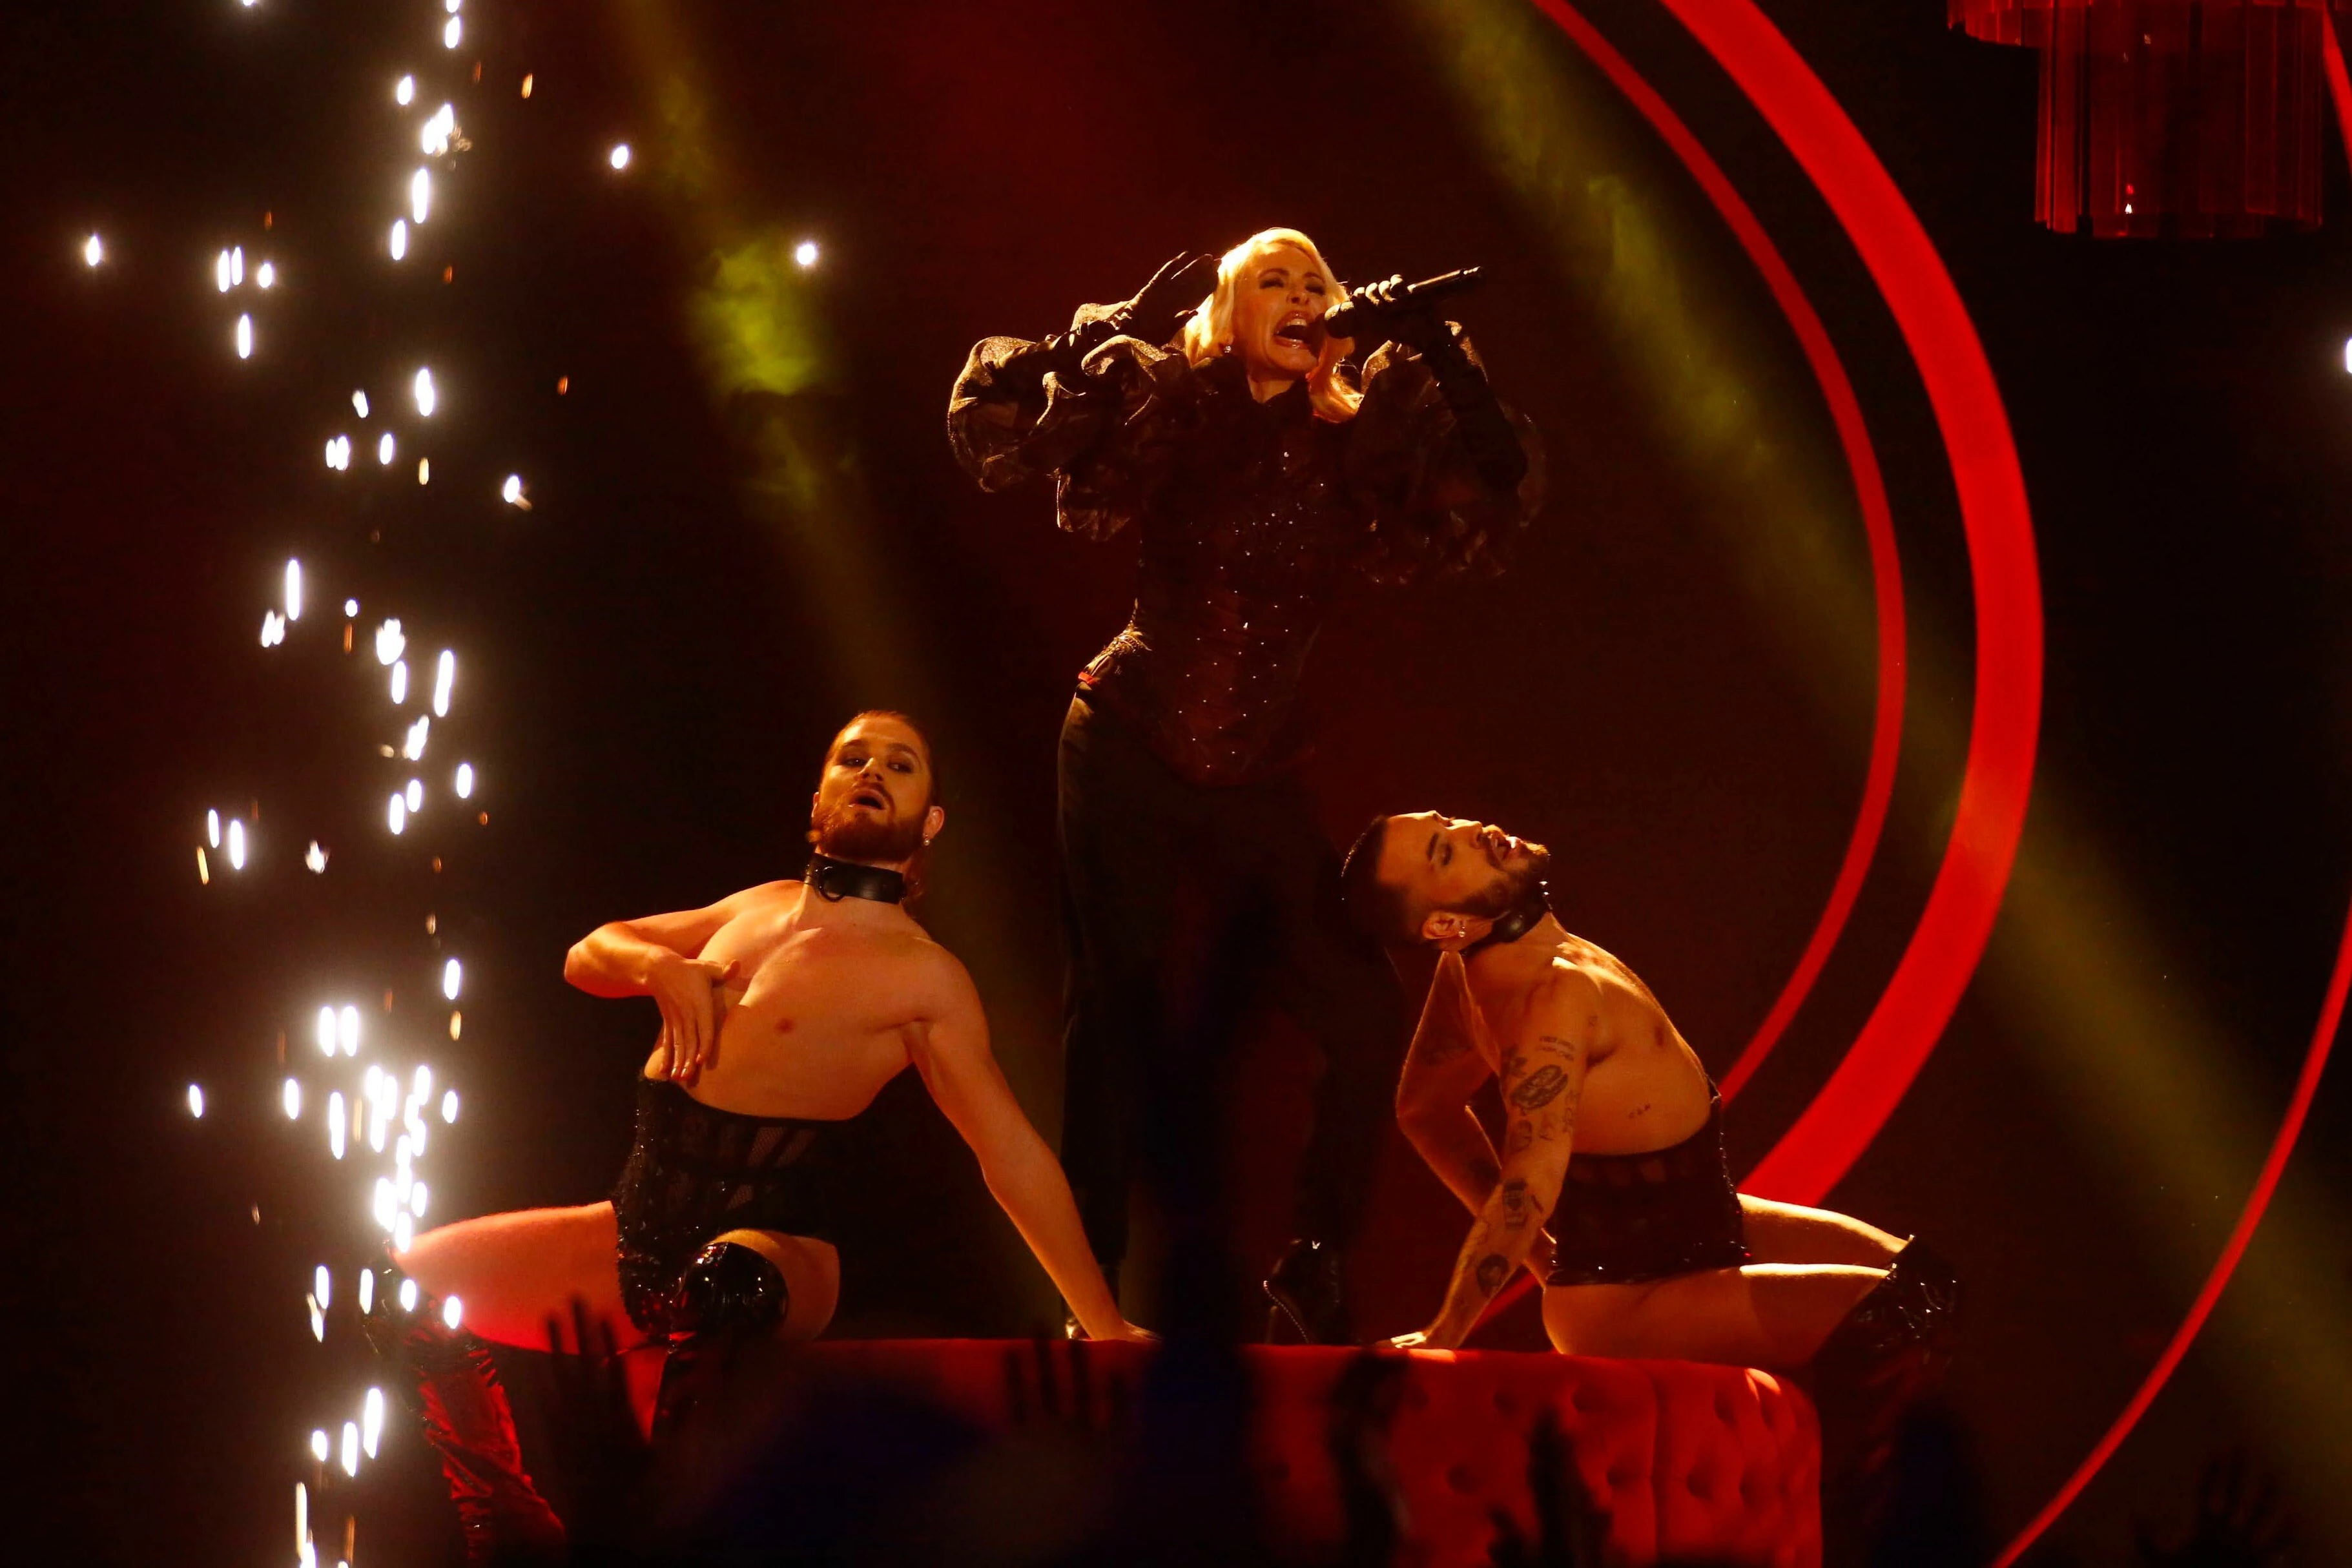 Letra y video de 'Zorra', de Nebulossa: canción que representará a España  en Eurovisión 2024